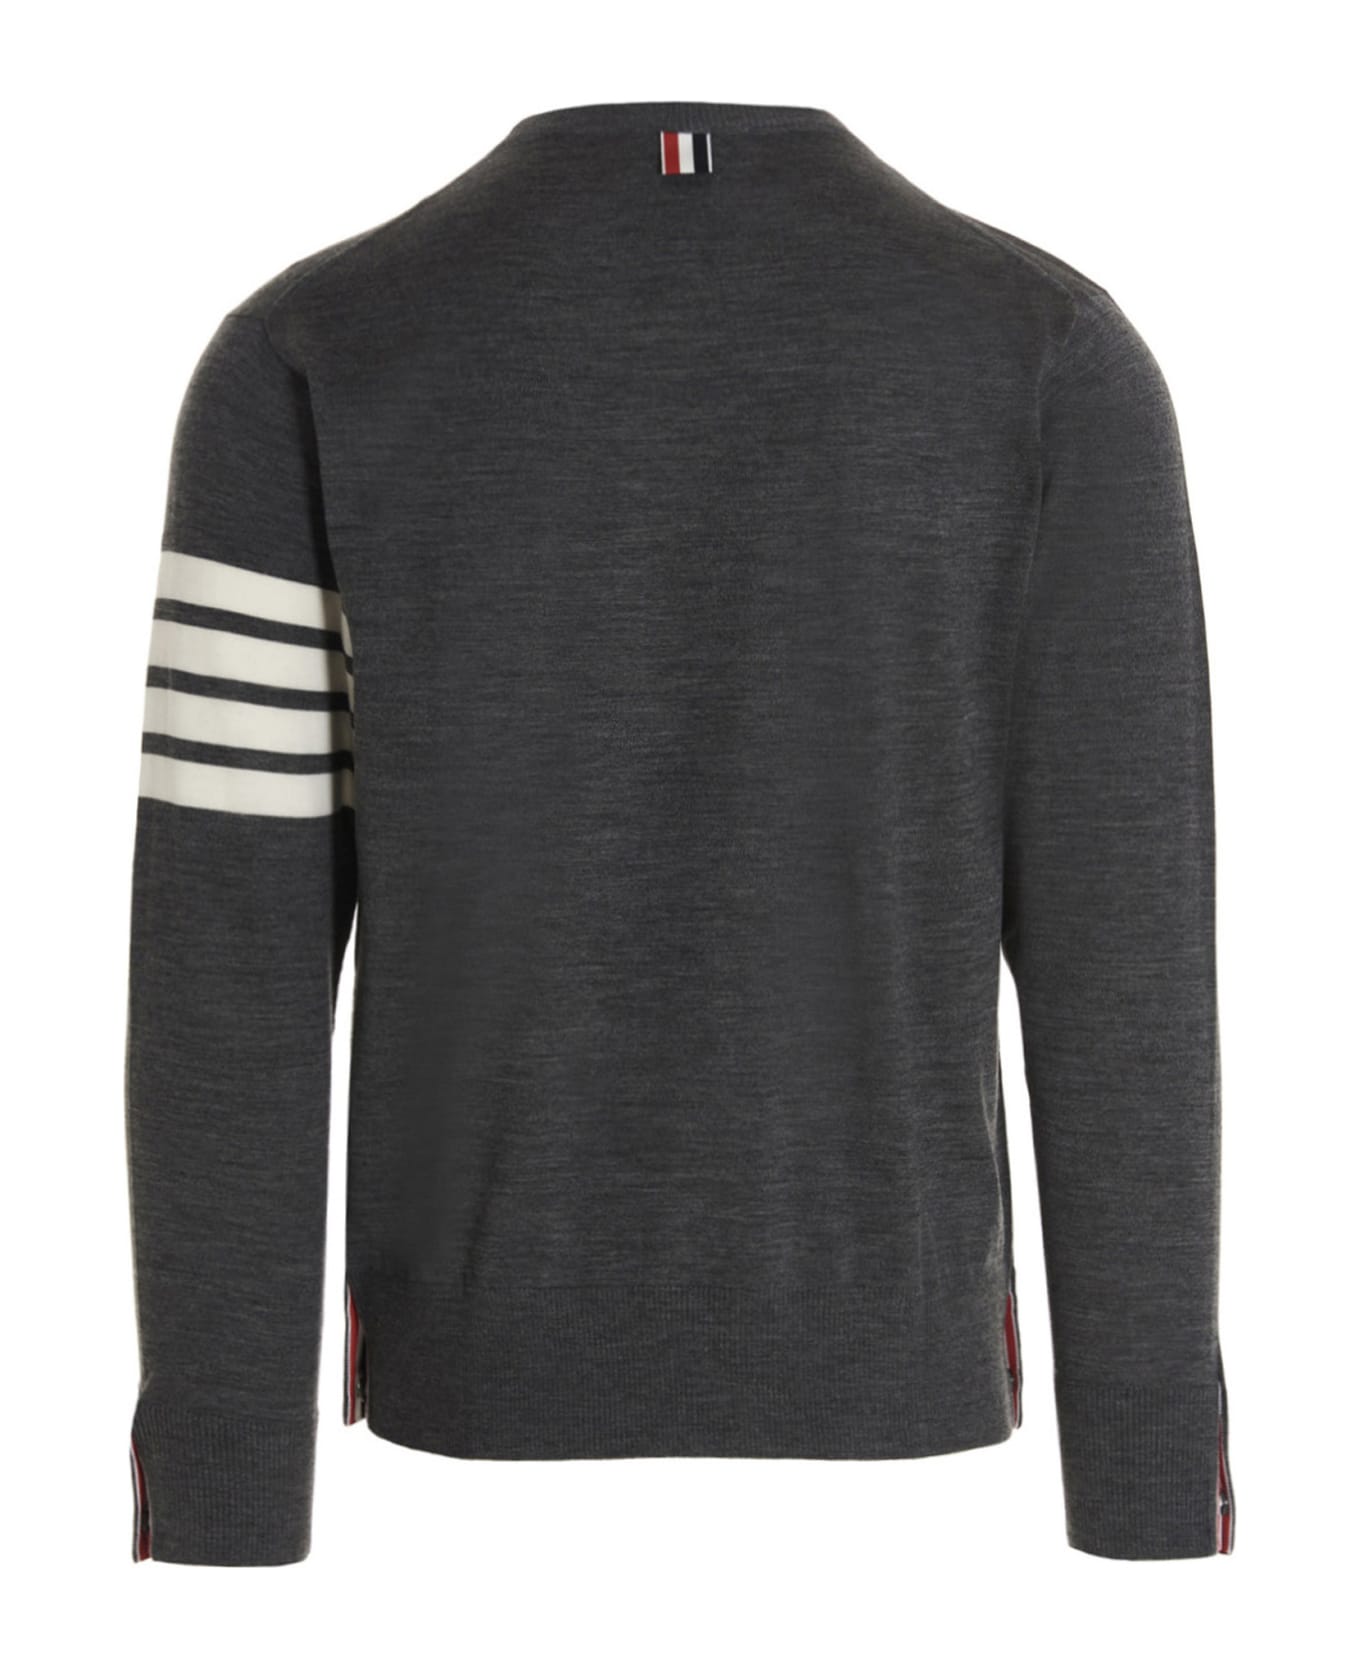 Thom Browne '4 Bar' Sweater - Med Grey ニットウェア